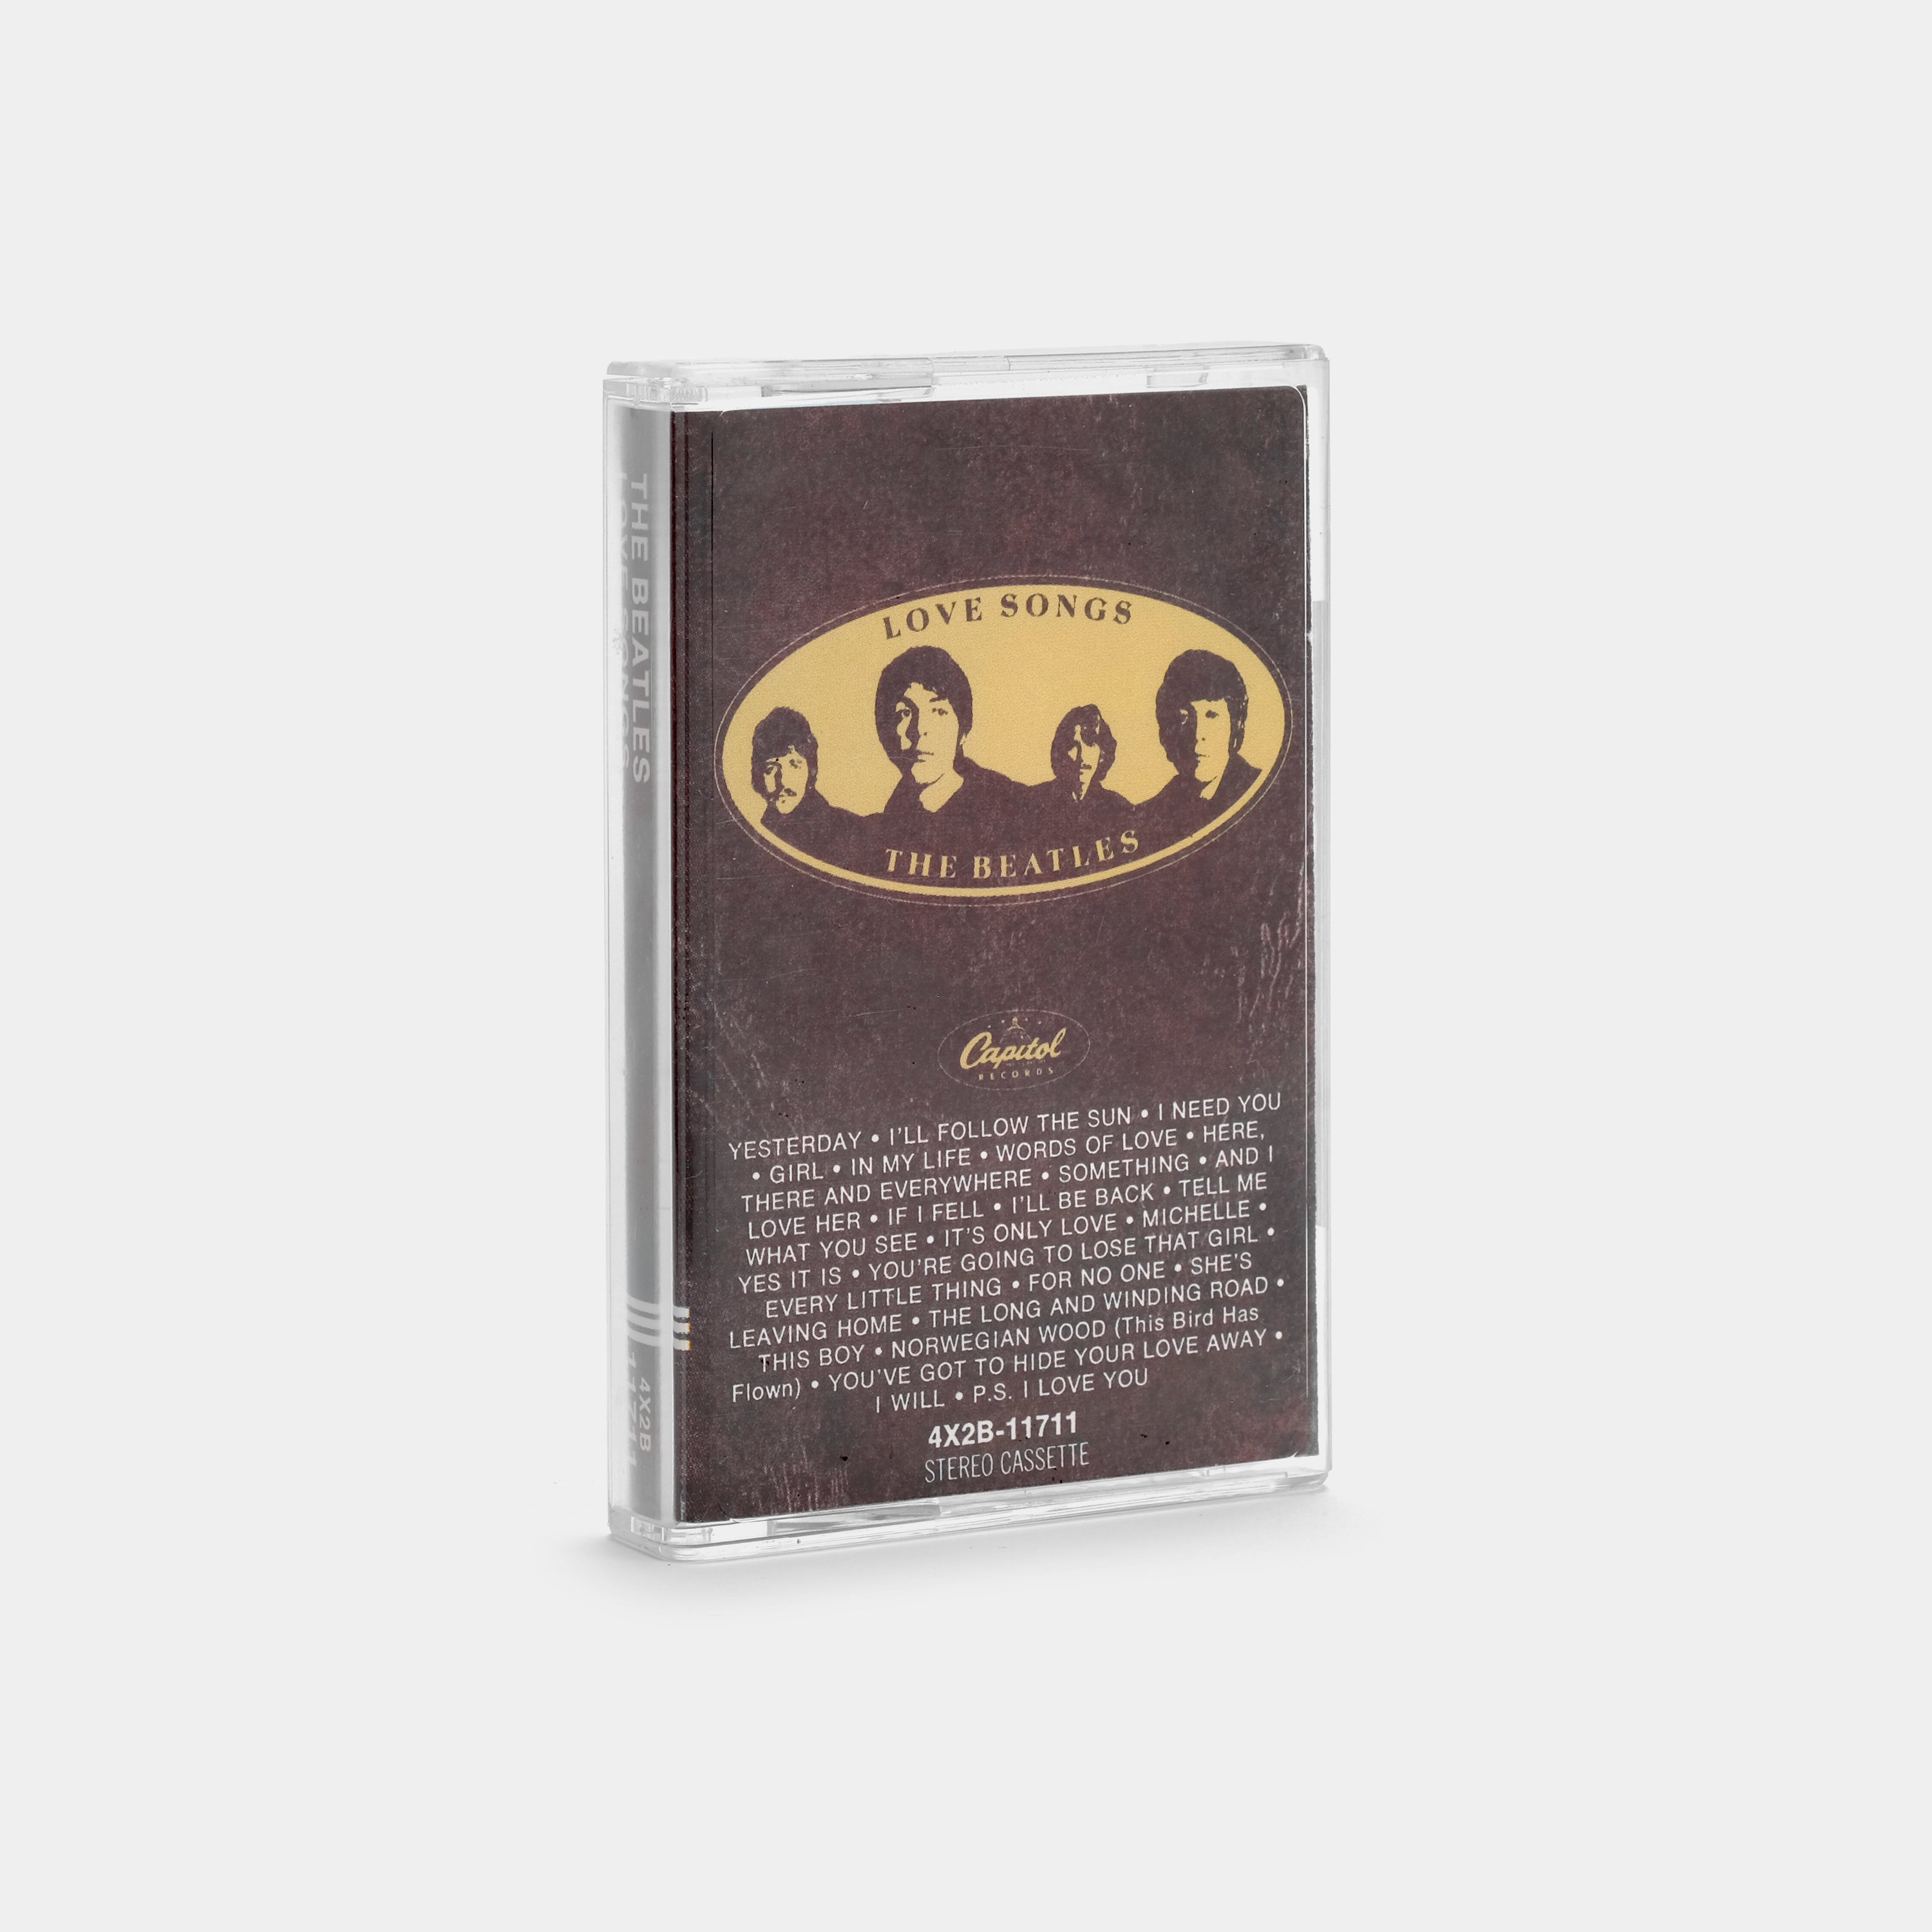 The Beatles - Love Songs Cassette Tape